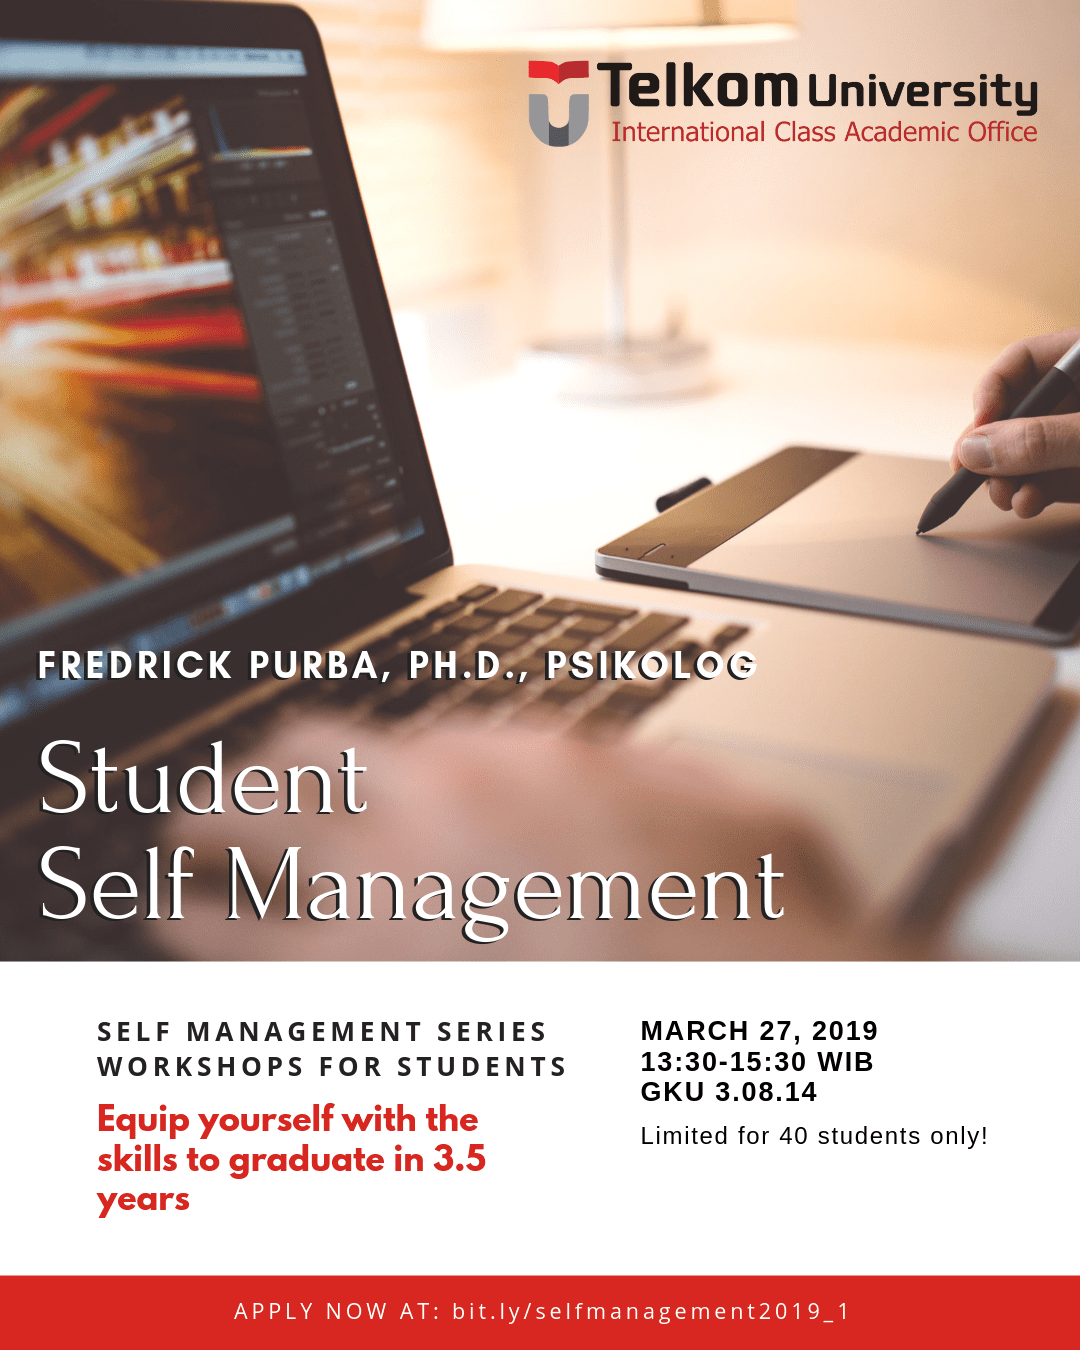 [Workshop] Student Self Management